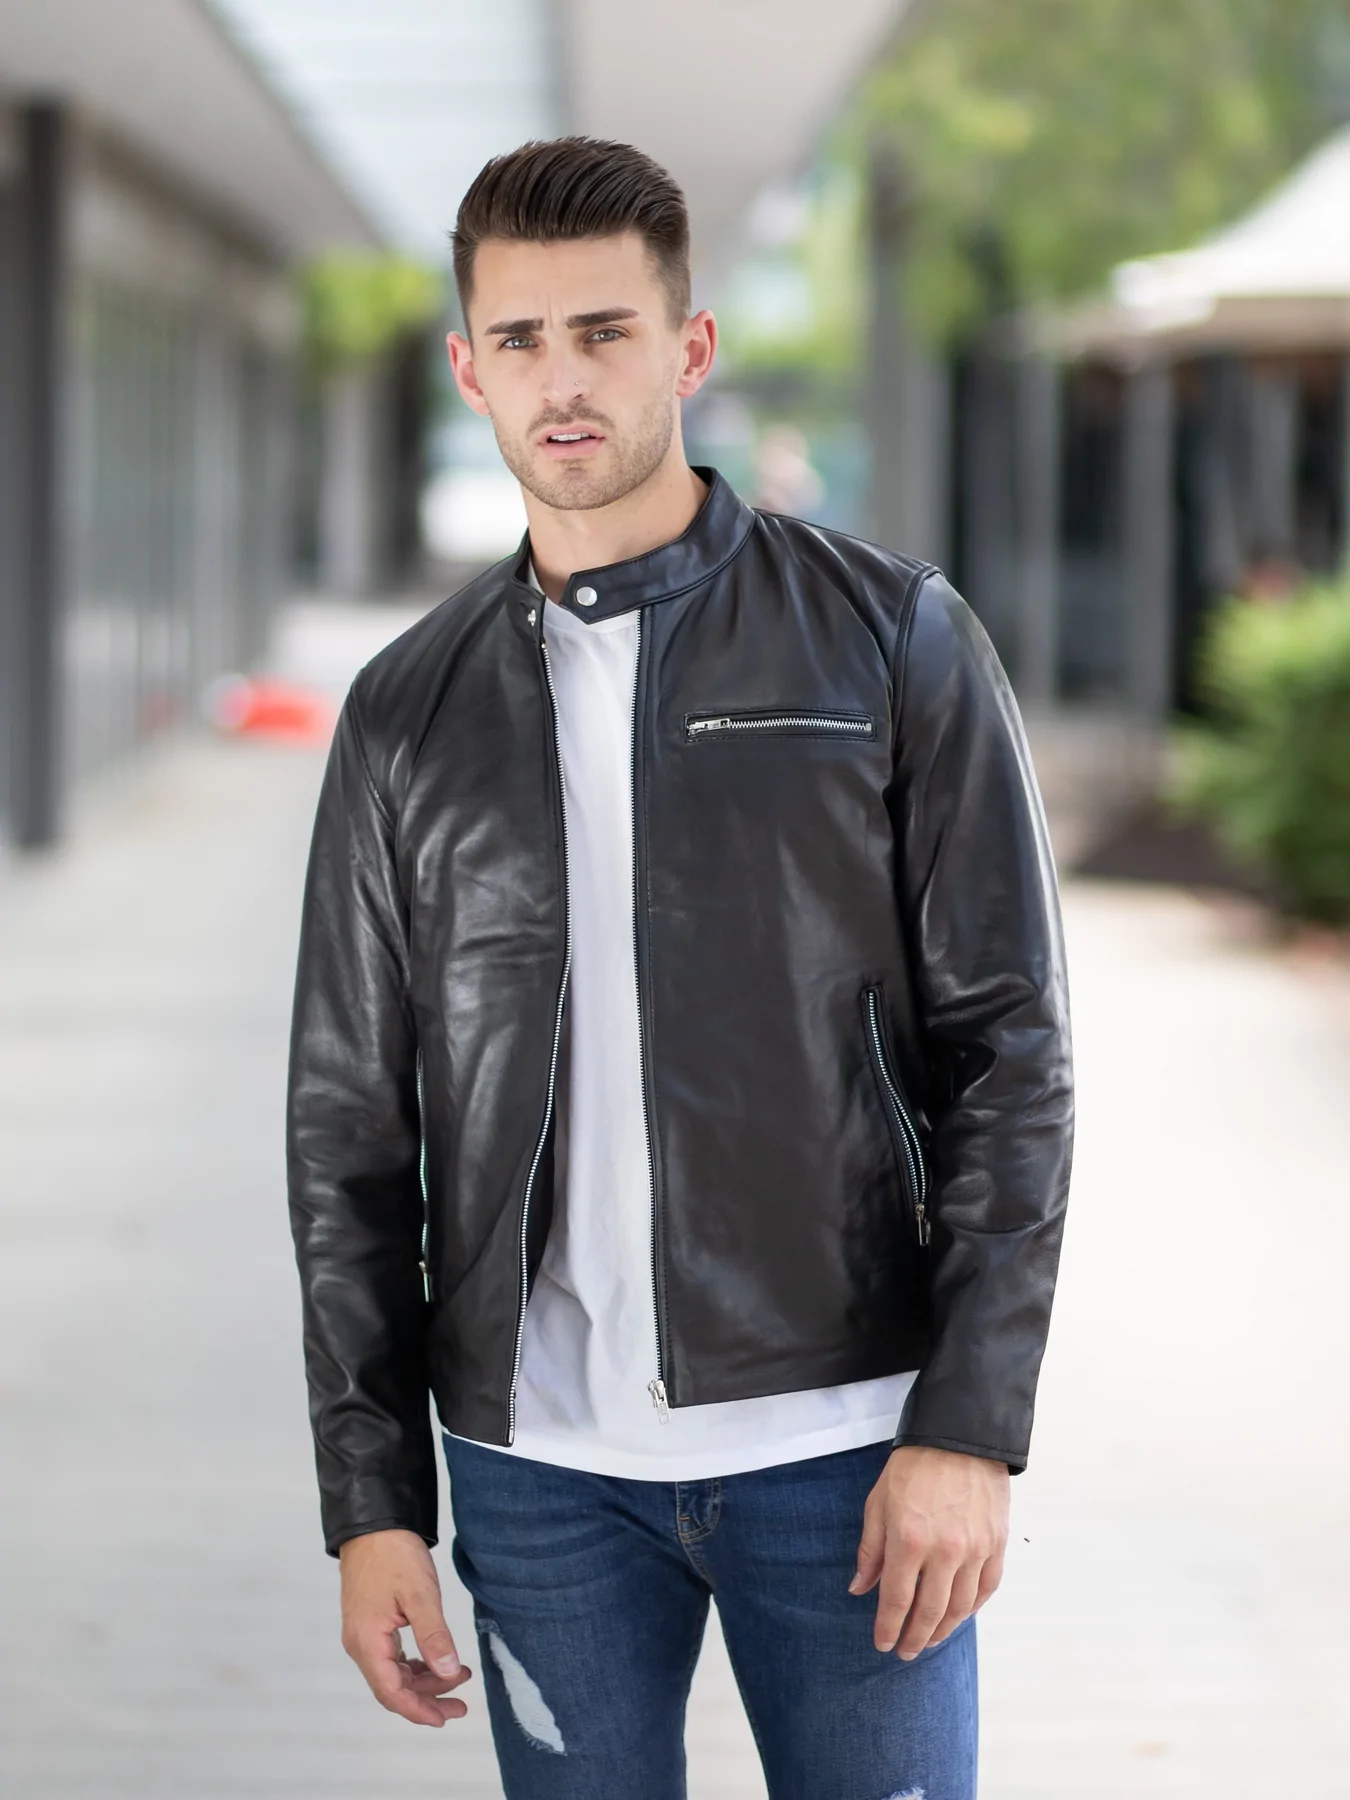 Stylish Black Supreme Leather Jacket